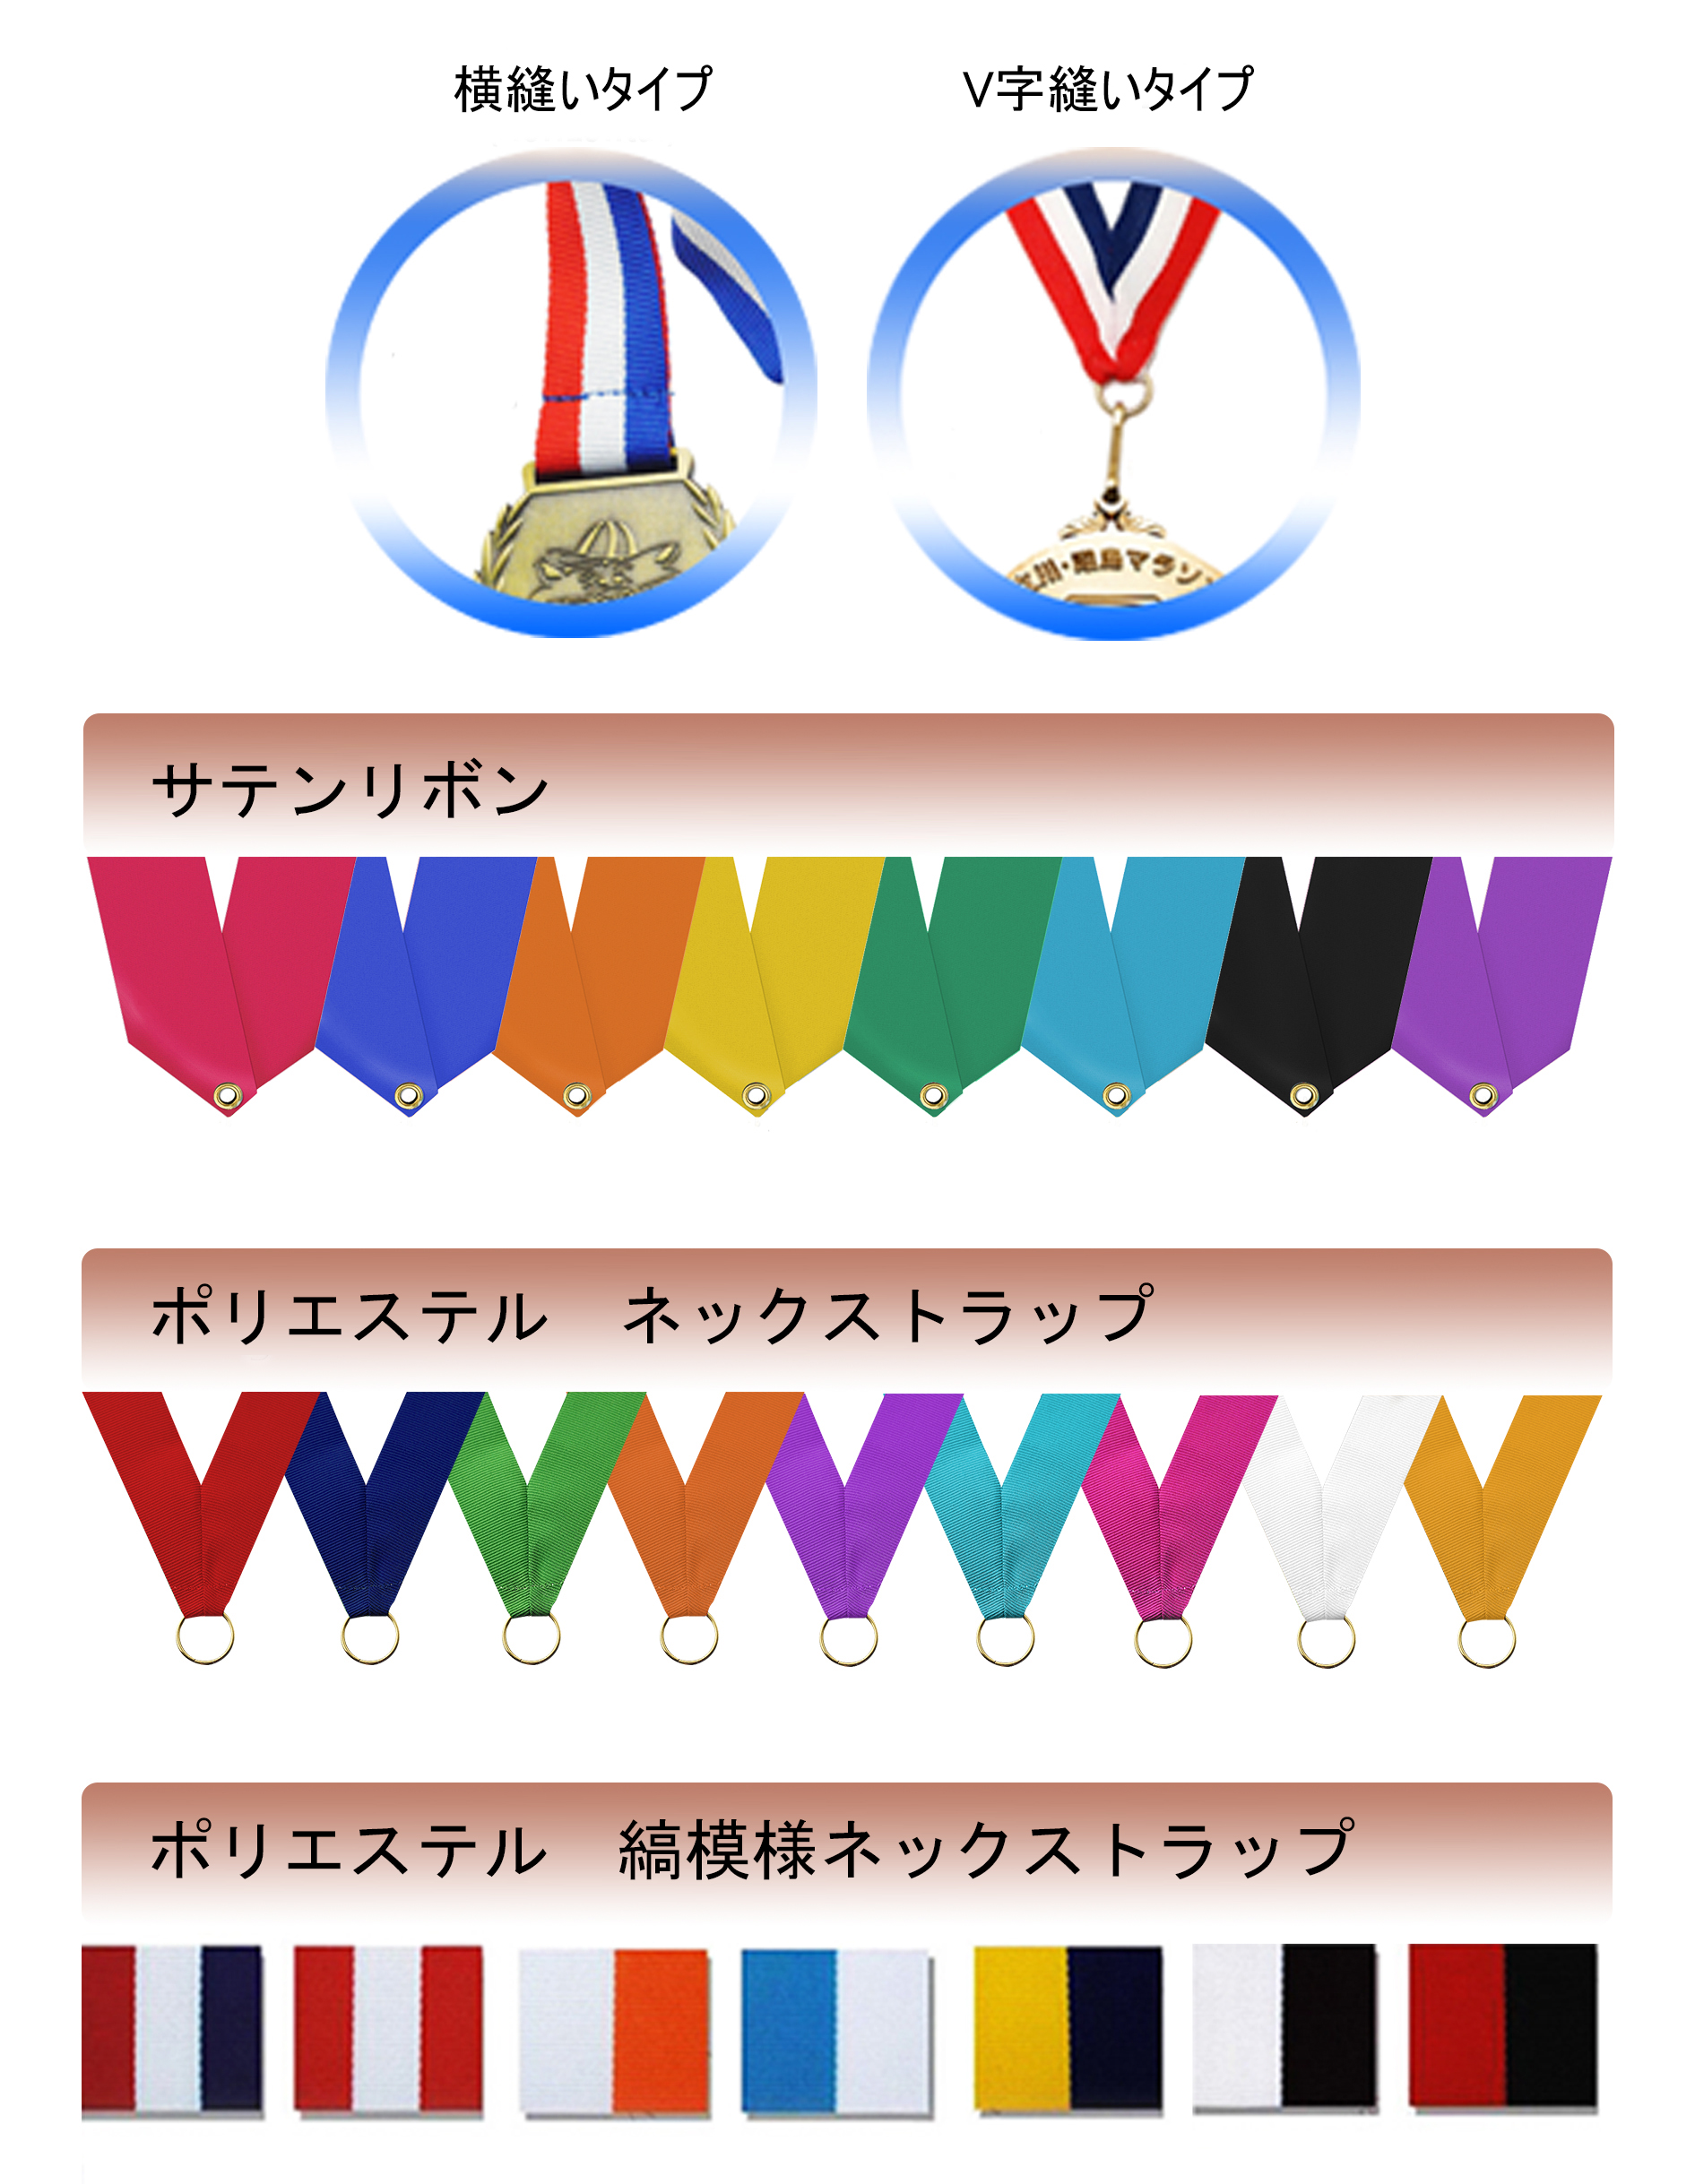 オリジナルメダル用各種リボン